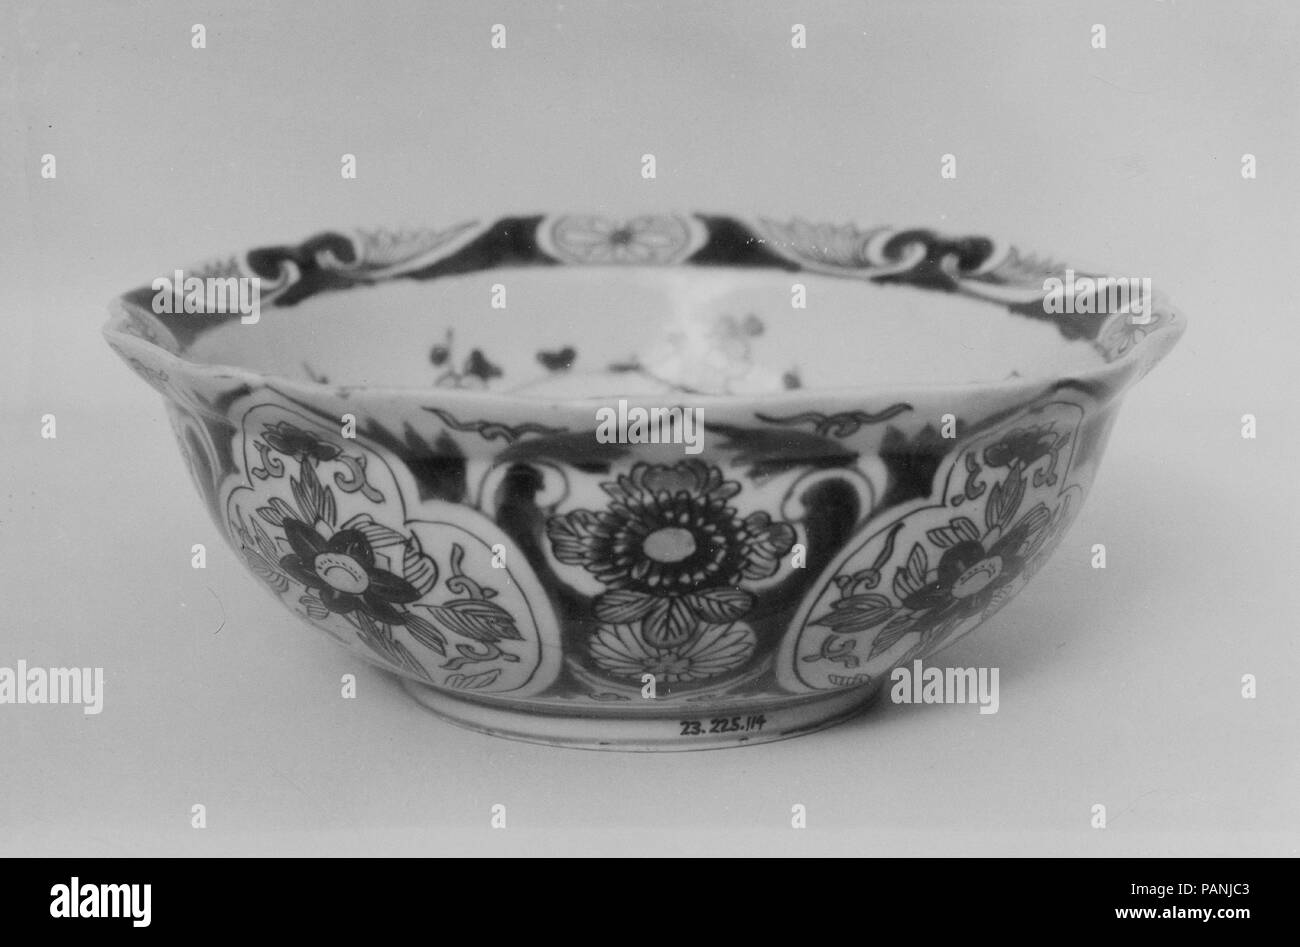 Bowl. Culture: Japan. Dimensions: H. 3 1/8 in. (7.9 cm); Diam. 8 1/16 in. (20.5 cm). Date: 1680. Museum: Metropolitan Museum of Art, New York, USA. Stock Photo